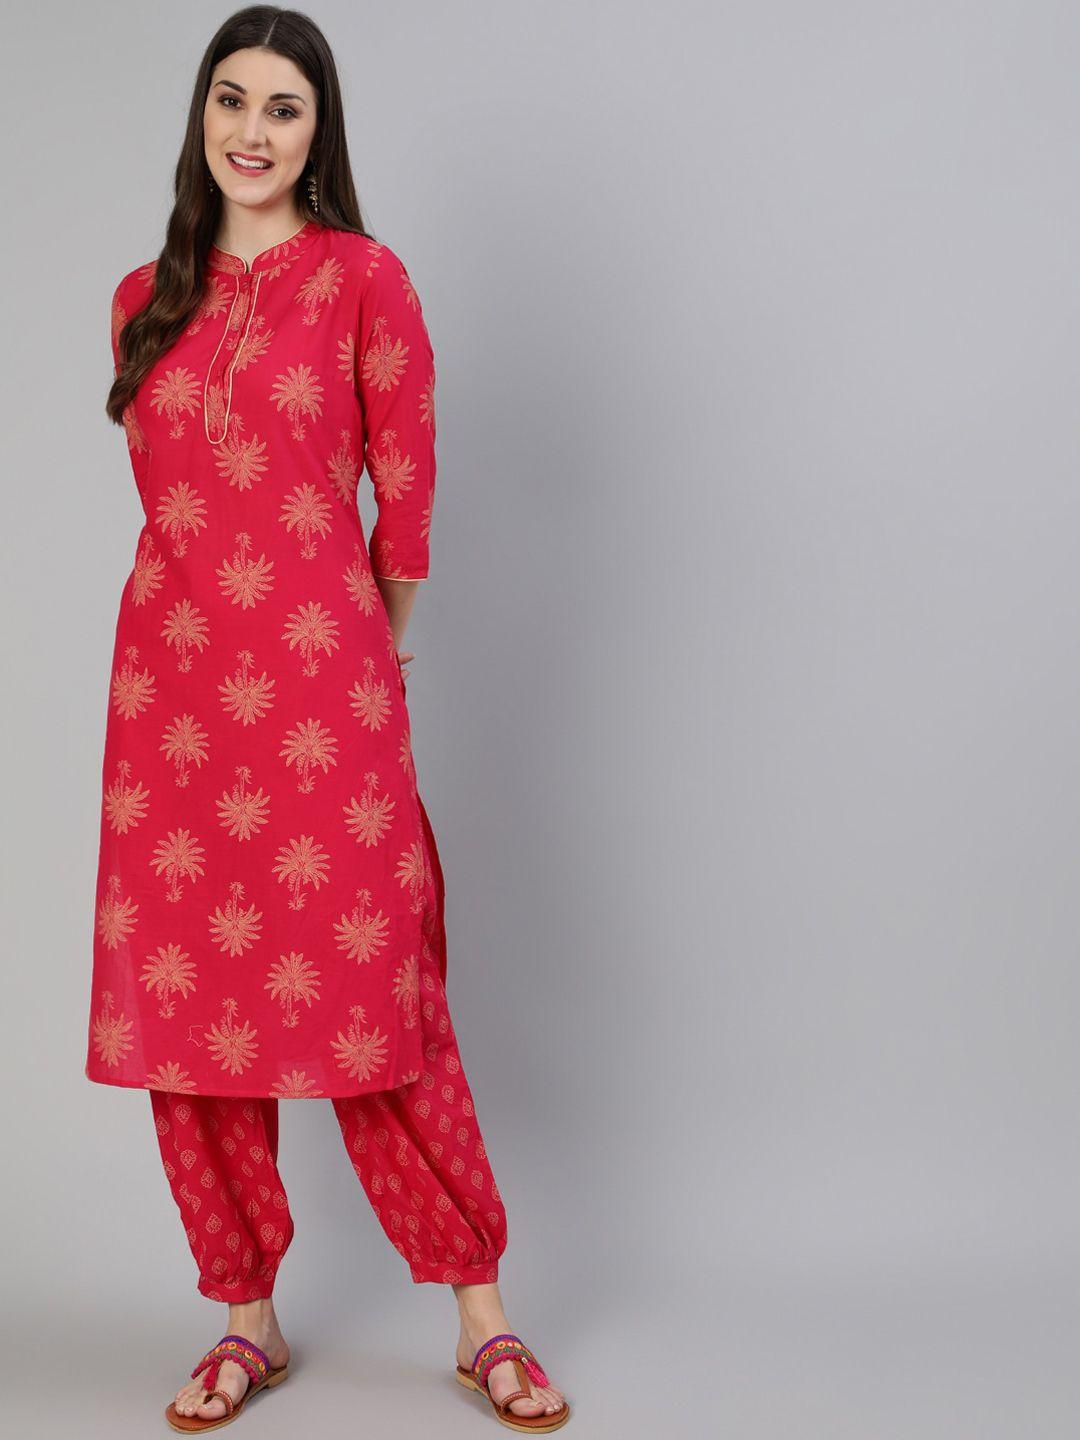 antaran women pink ethnic motifs printed pure cotton kurti with salwar